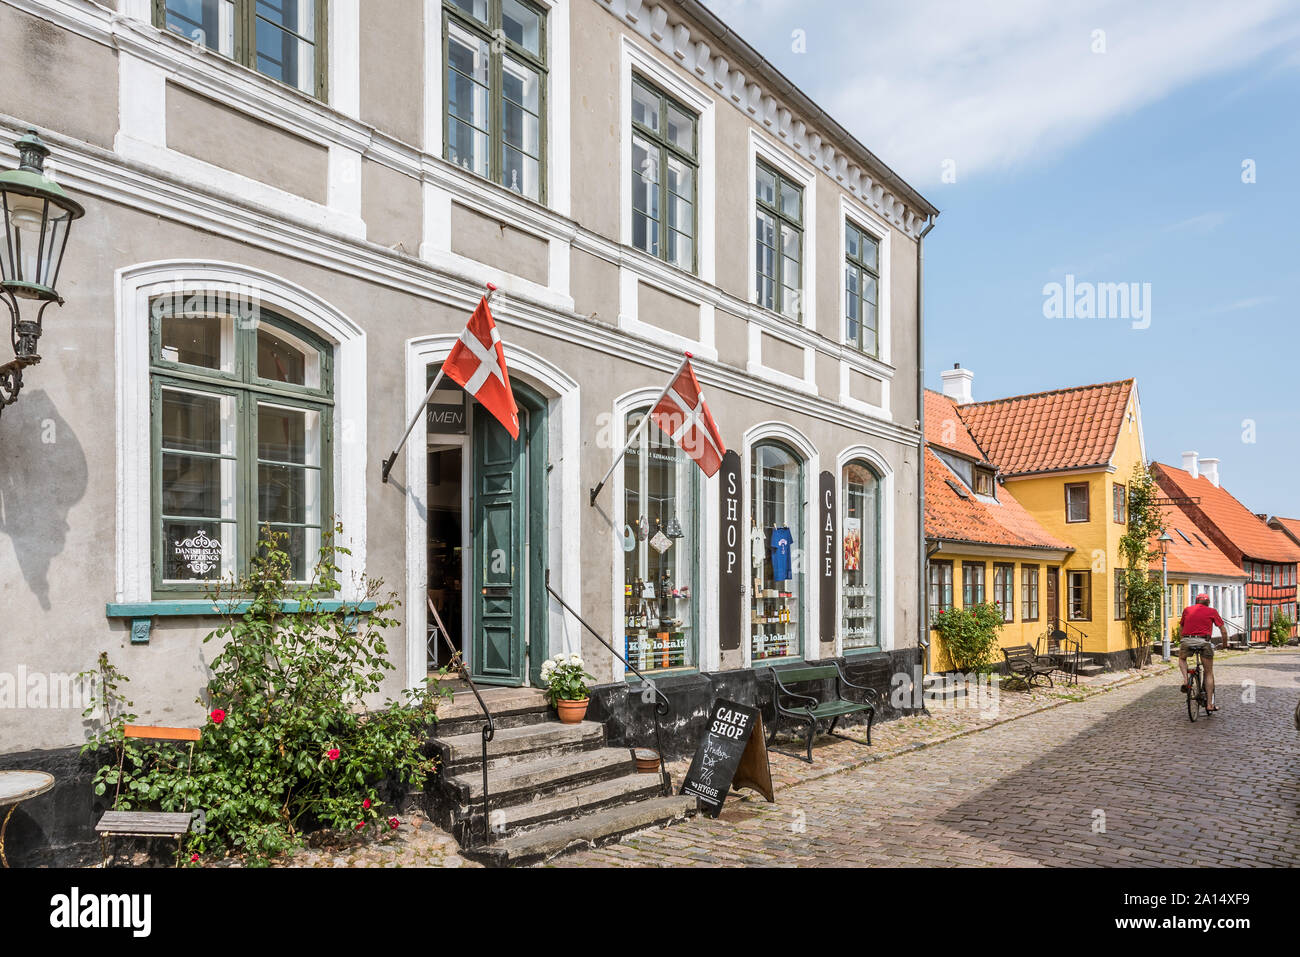 Una antigua tienda retro con banderas danesas en la plaza de Aeroskobing, Dinamarca, 13 de julio de 2019 Foto de stock